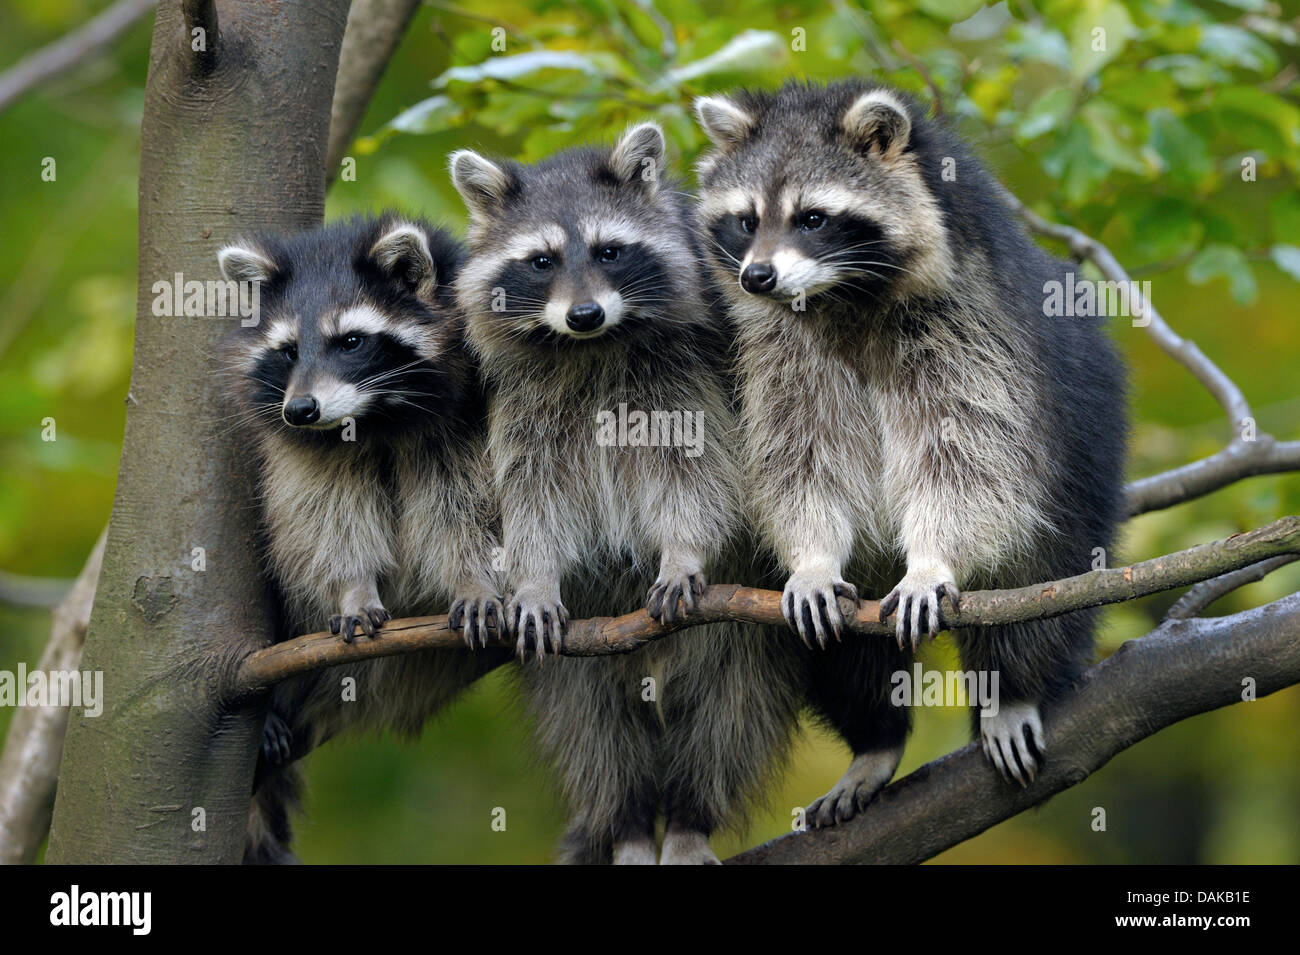 Comunes de mapache (Procyon lotor), tres mapaches sentados uno al lado del otro en una rama, Alemania Foto de stock